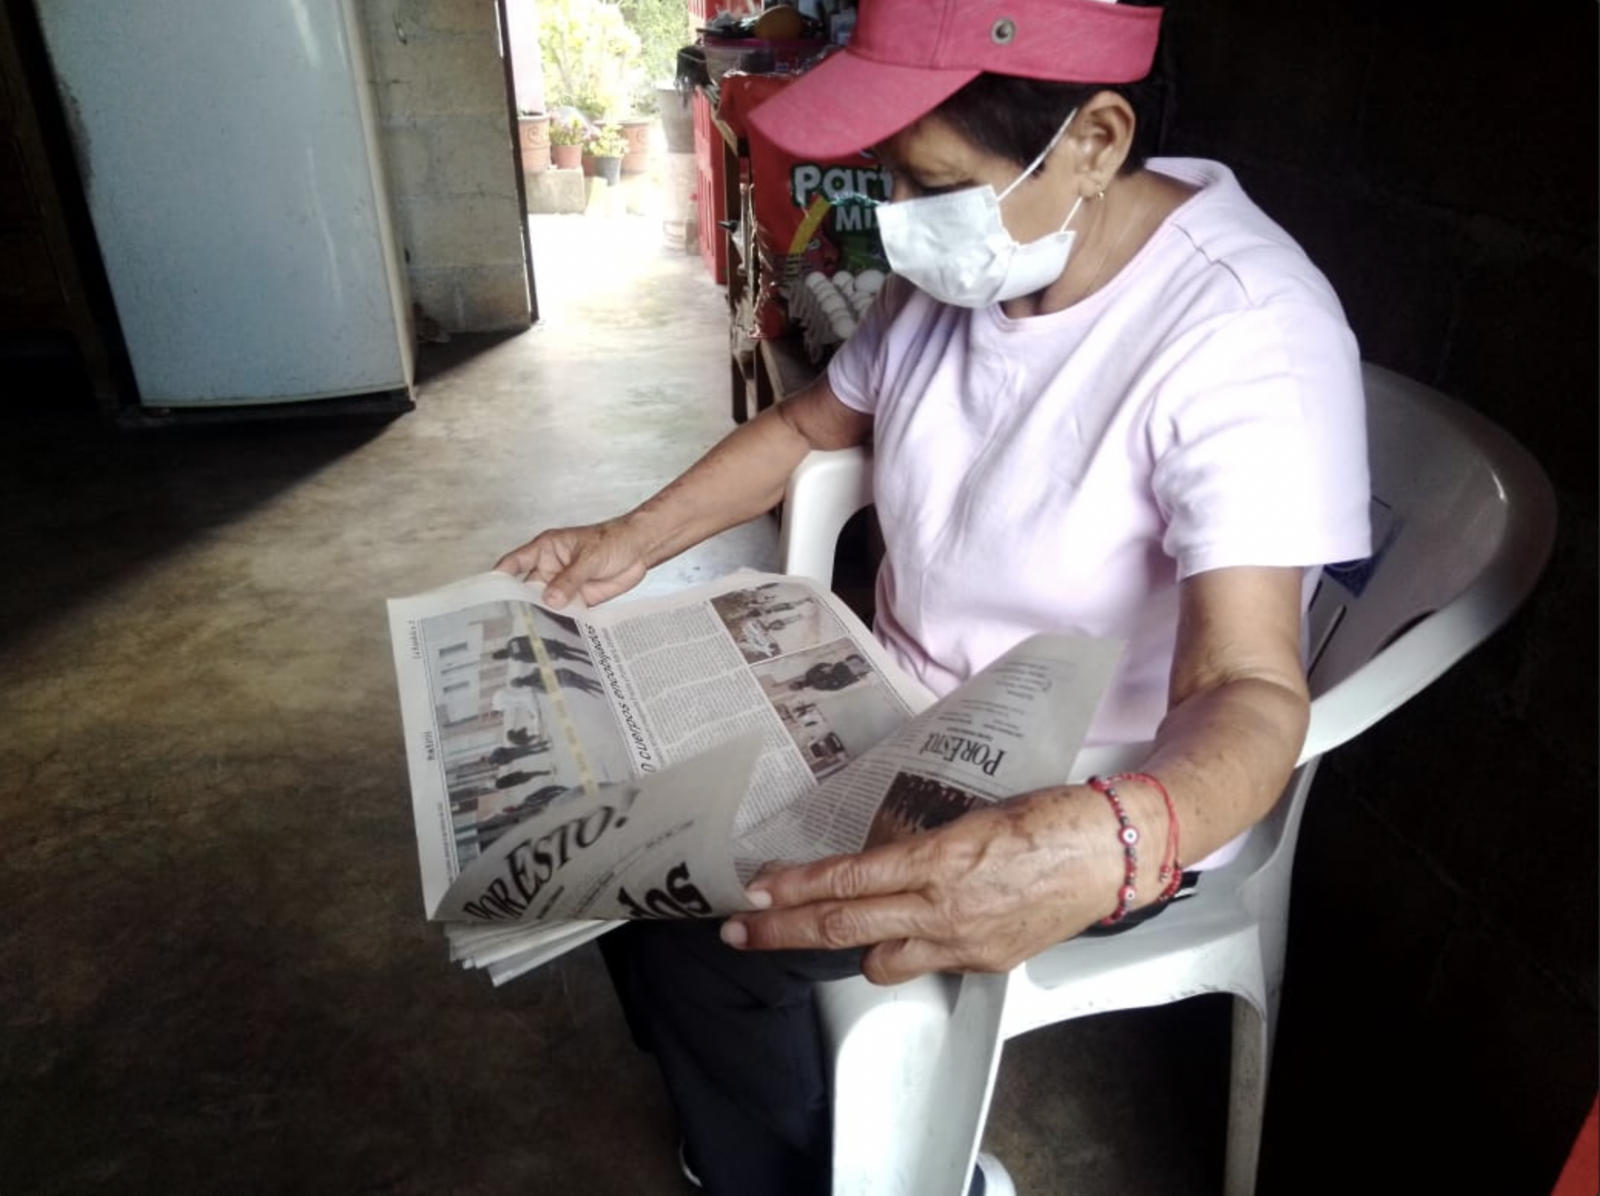 Por Esto! Yucatán 31 años: Leer Por Esto!, herencia de su padre